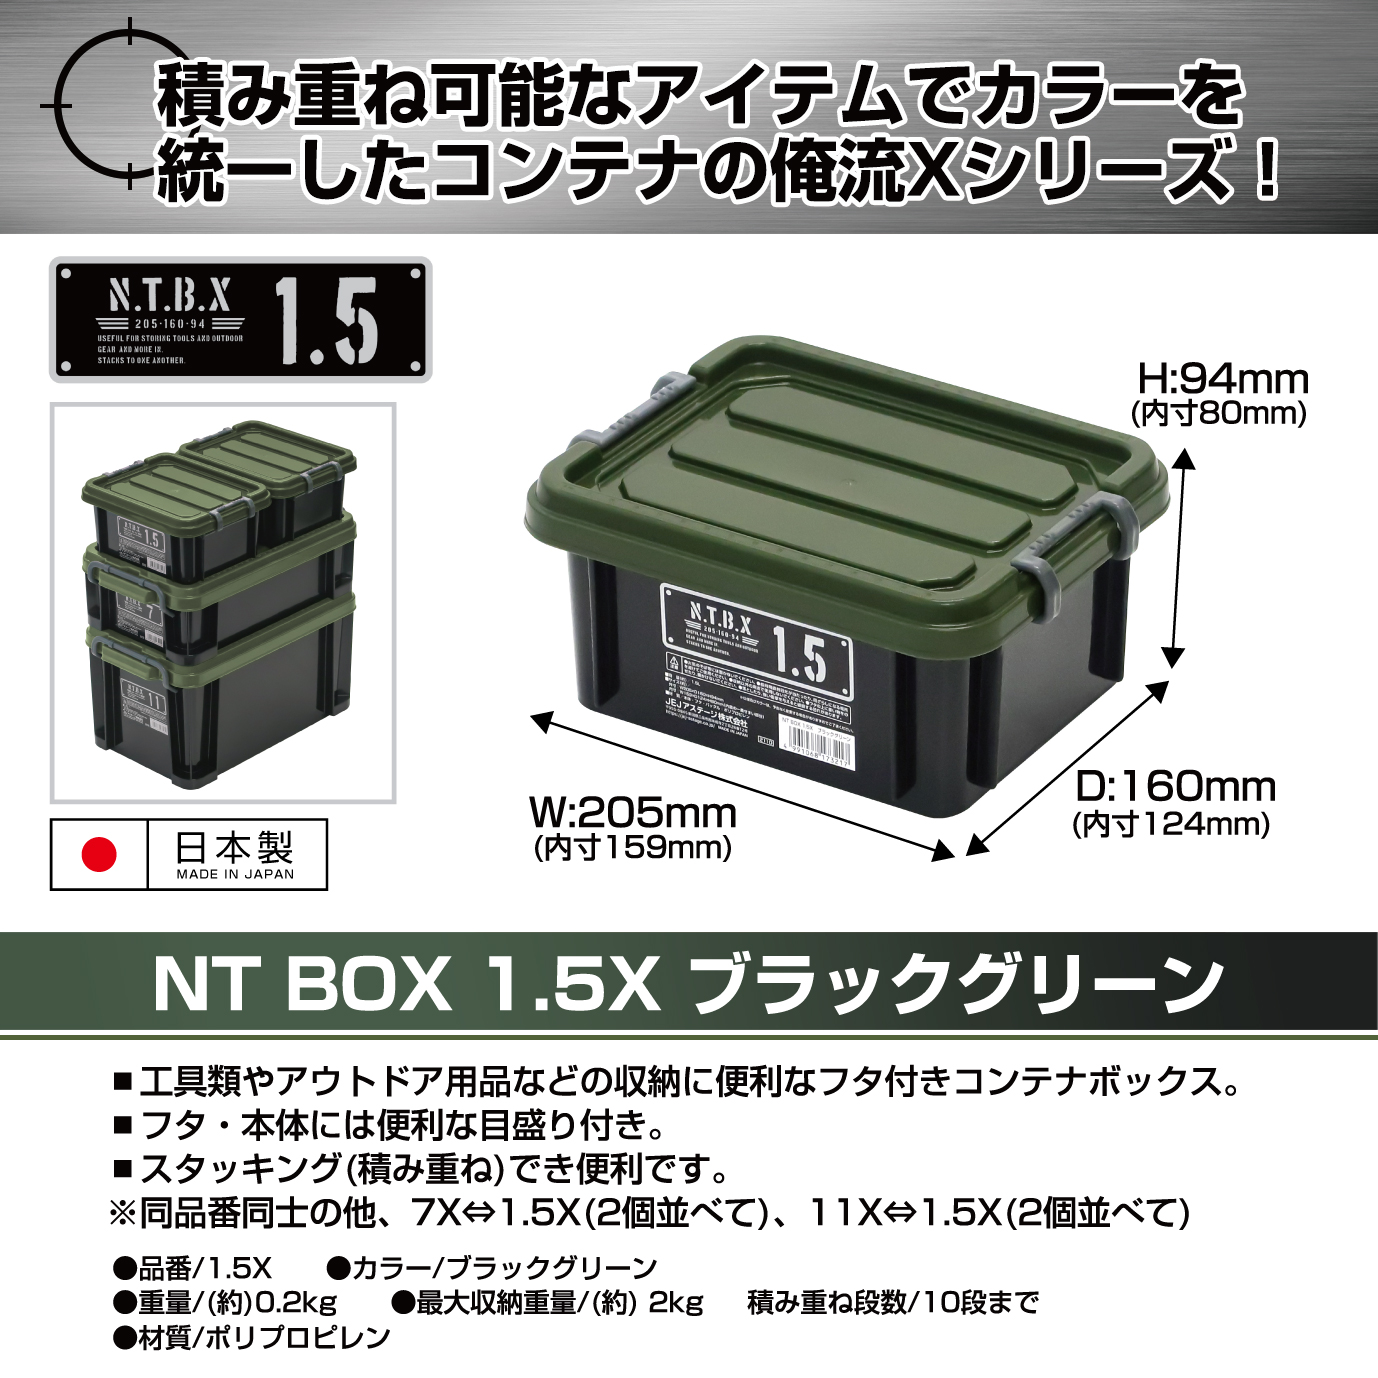 新商品紹介】Xシリーズ～NTボックス～ - JEJアステージ株式会社 ...